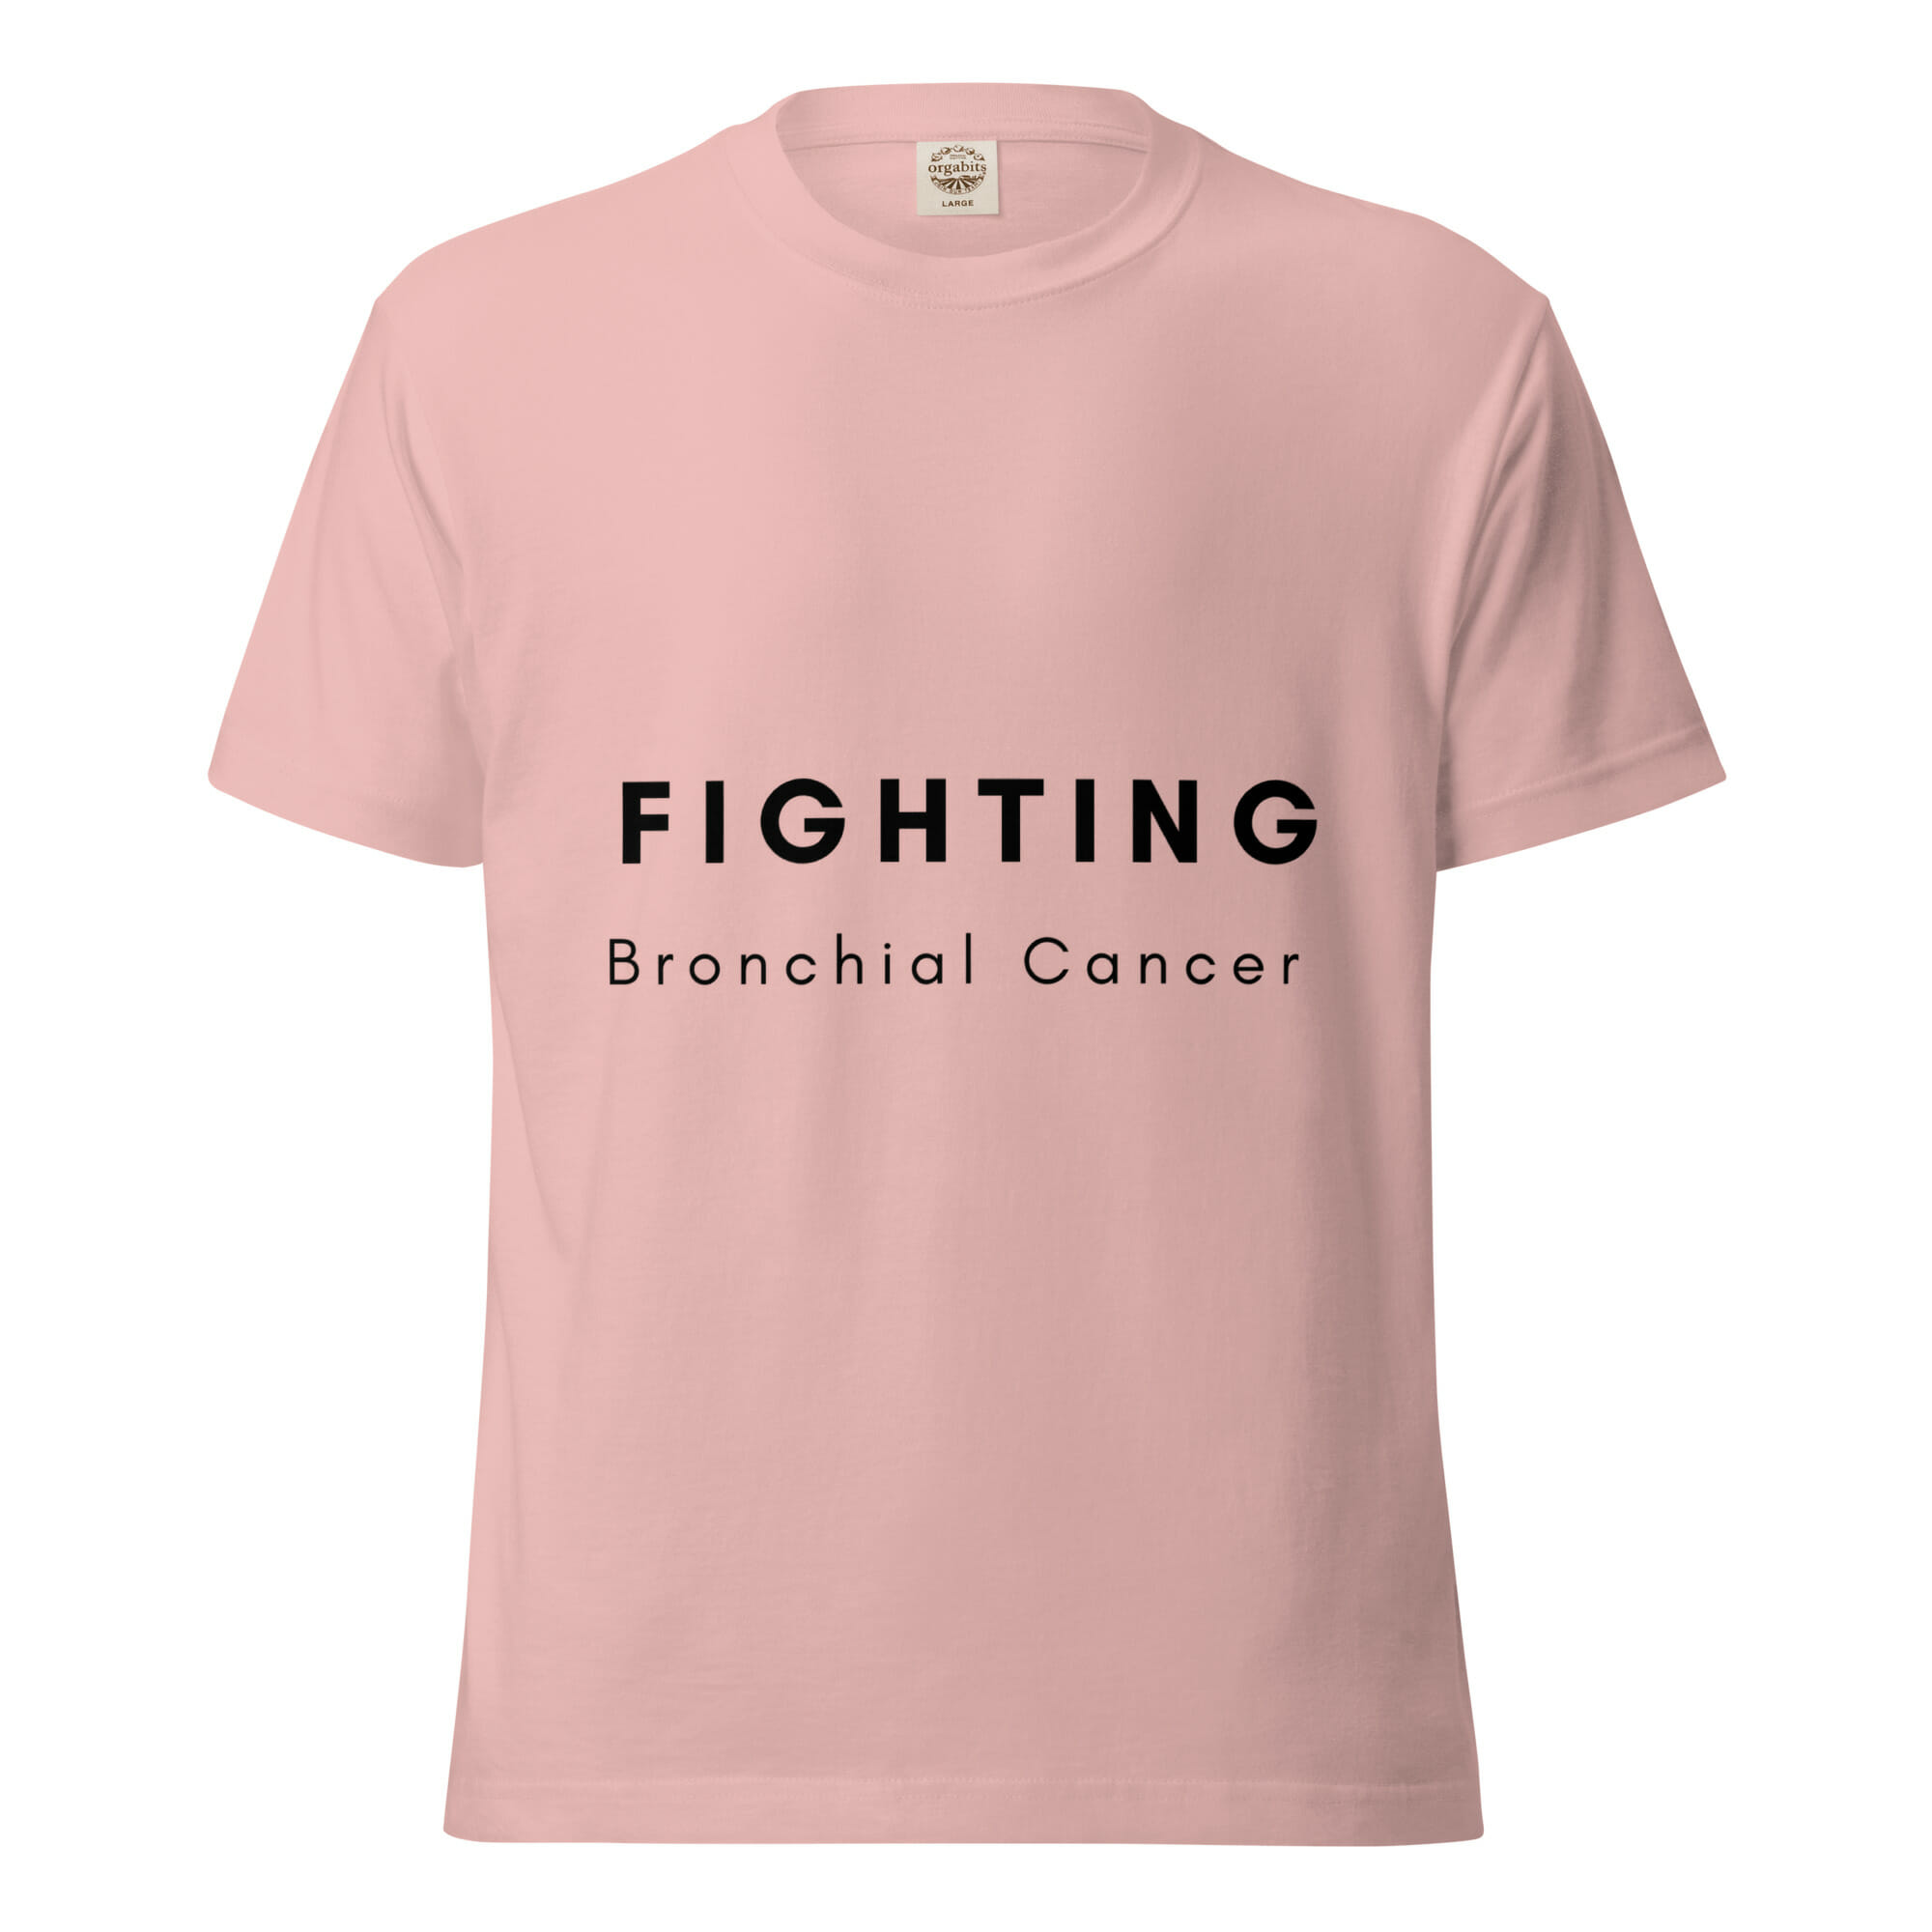 lightweight-cotton-t-shirt-dusty-pink-front-63de1b7c8e557.jpg